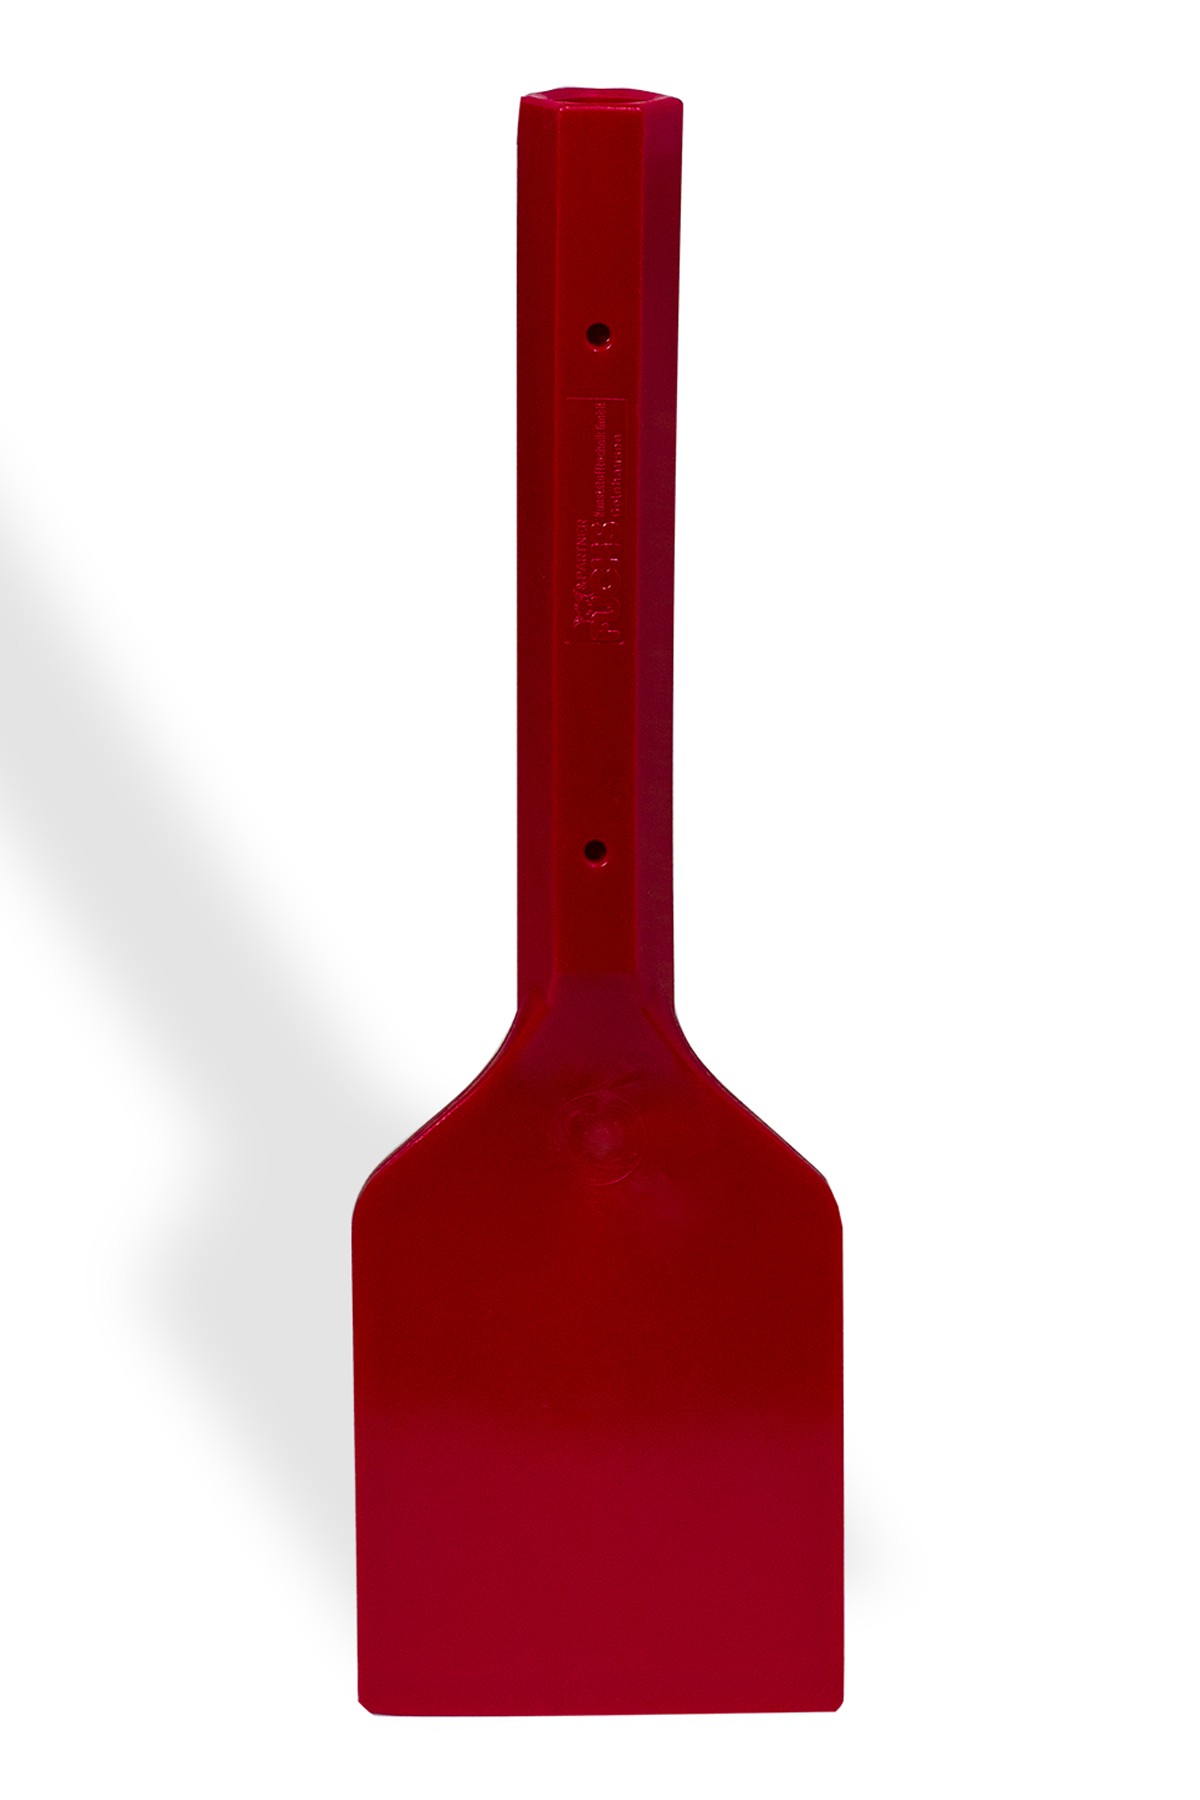 SP Bel-Art Hard Plastic Scraper; 10 in. Handle, 5 x 6 in. Blade, Red